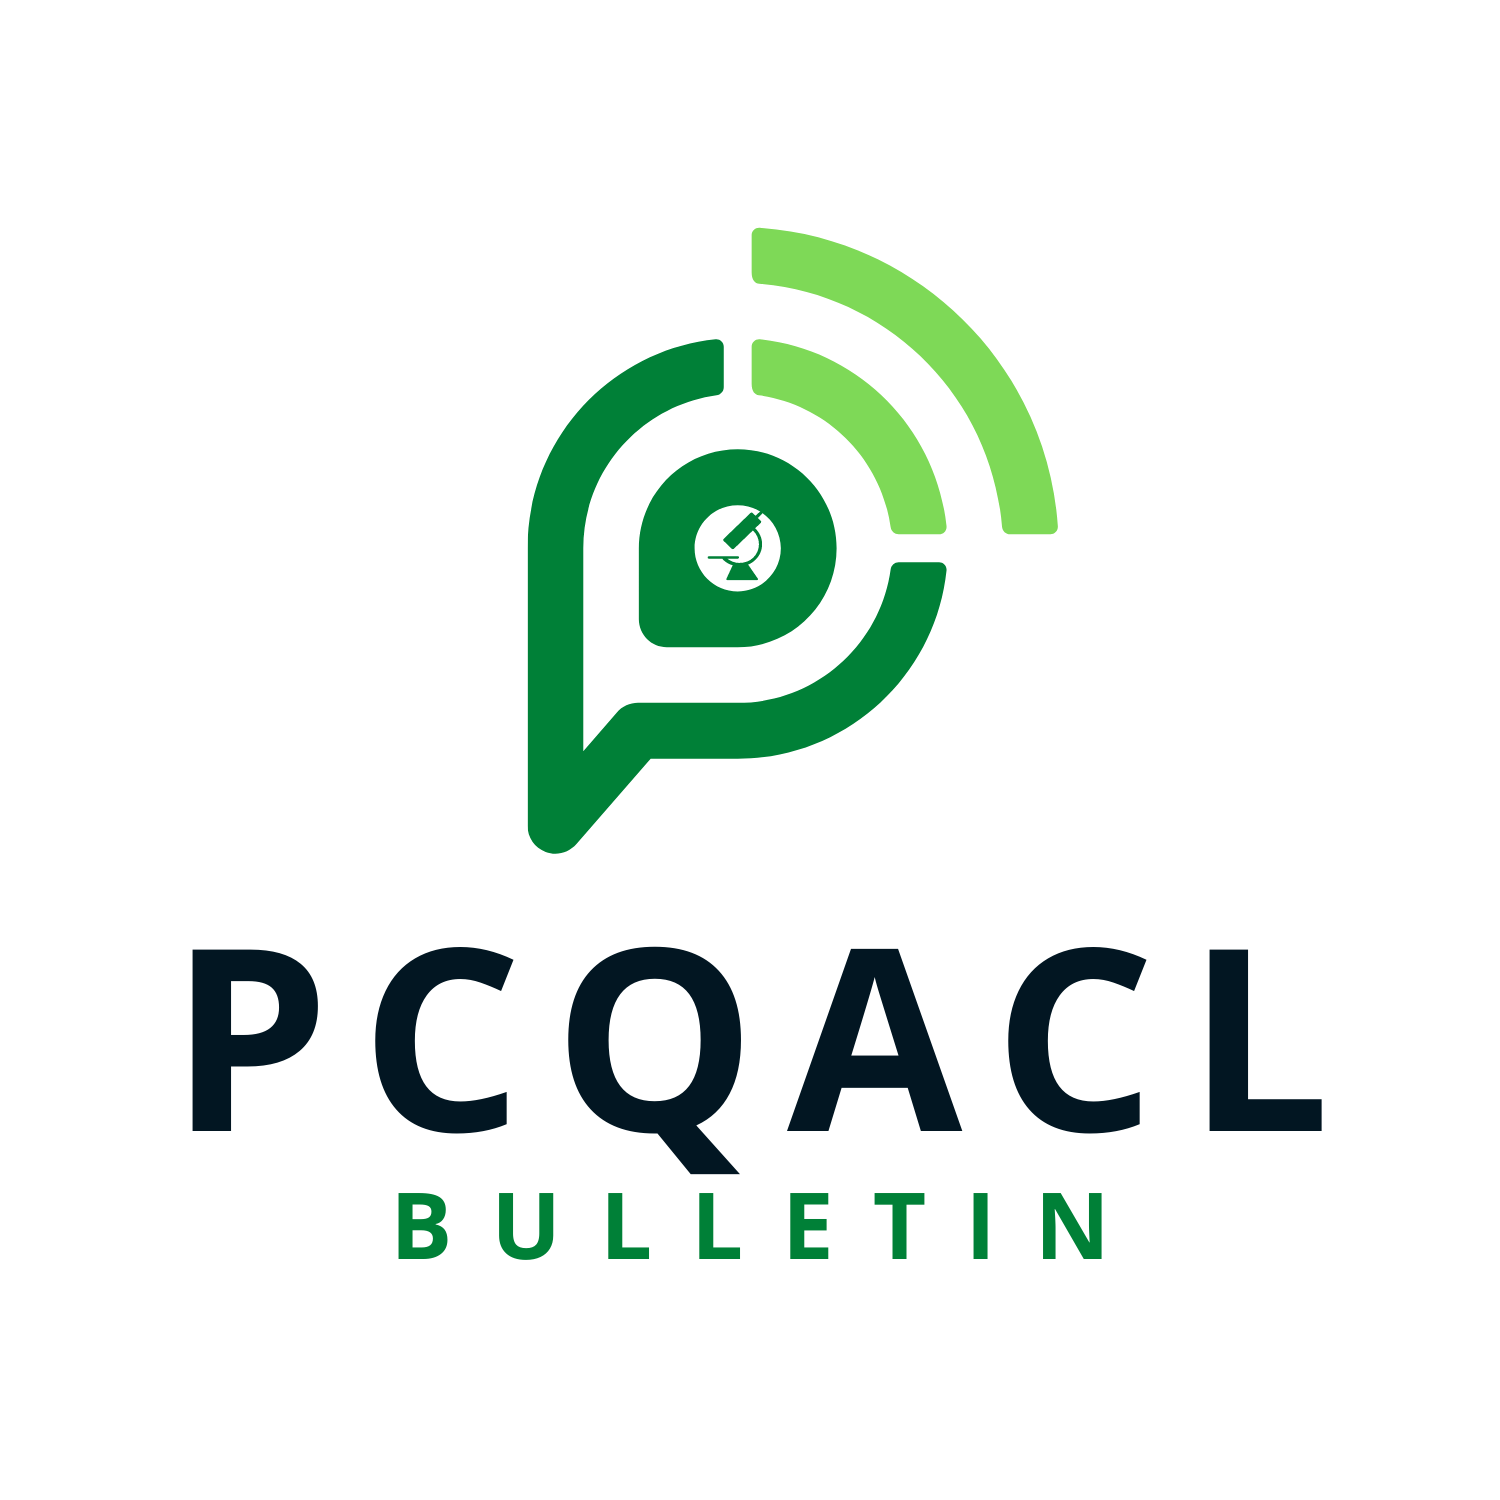 pcqacl-bulletin